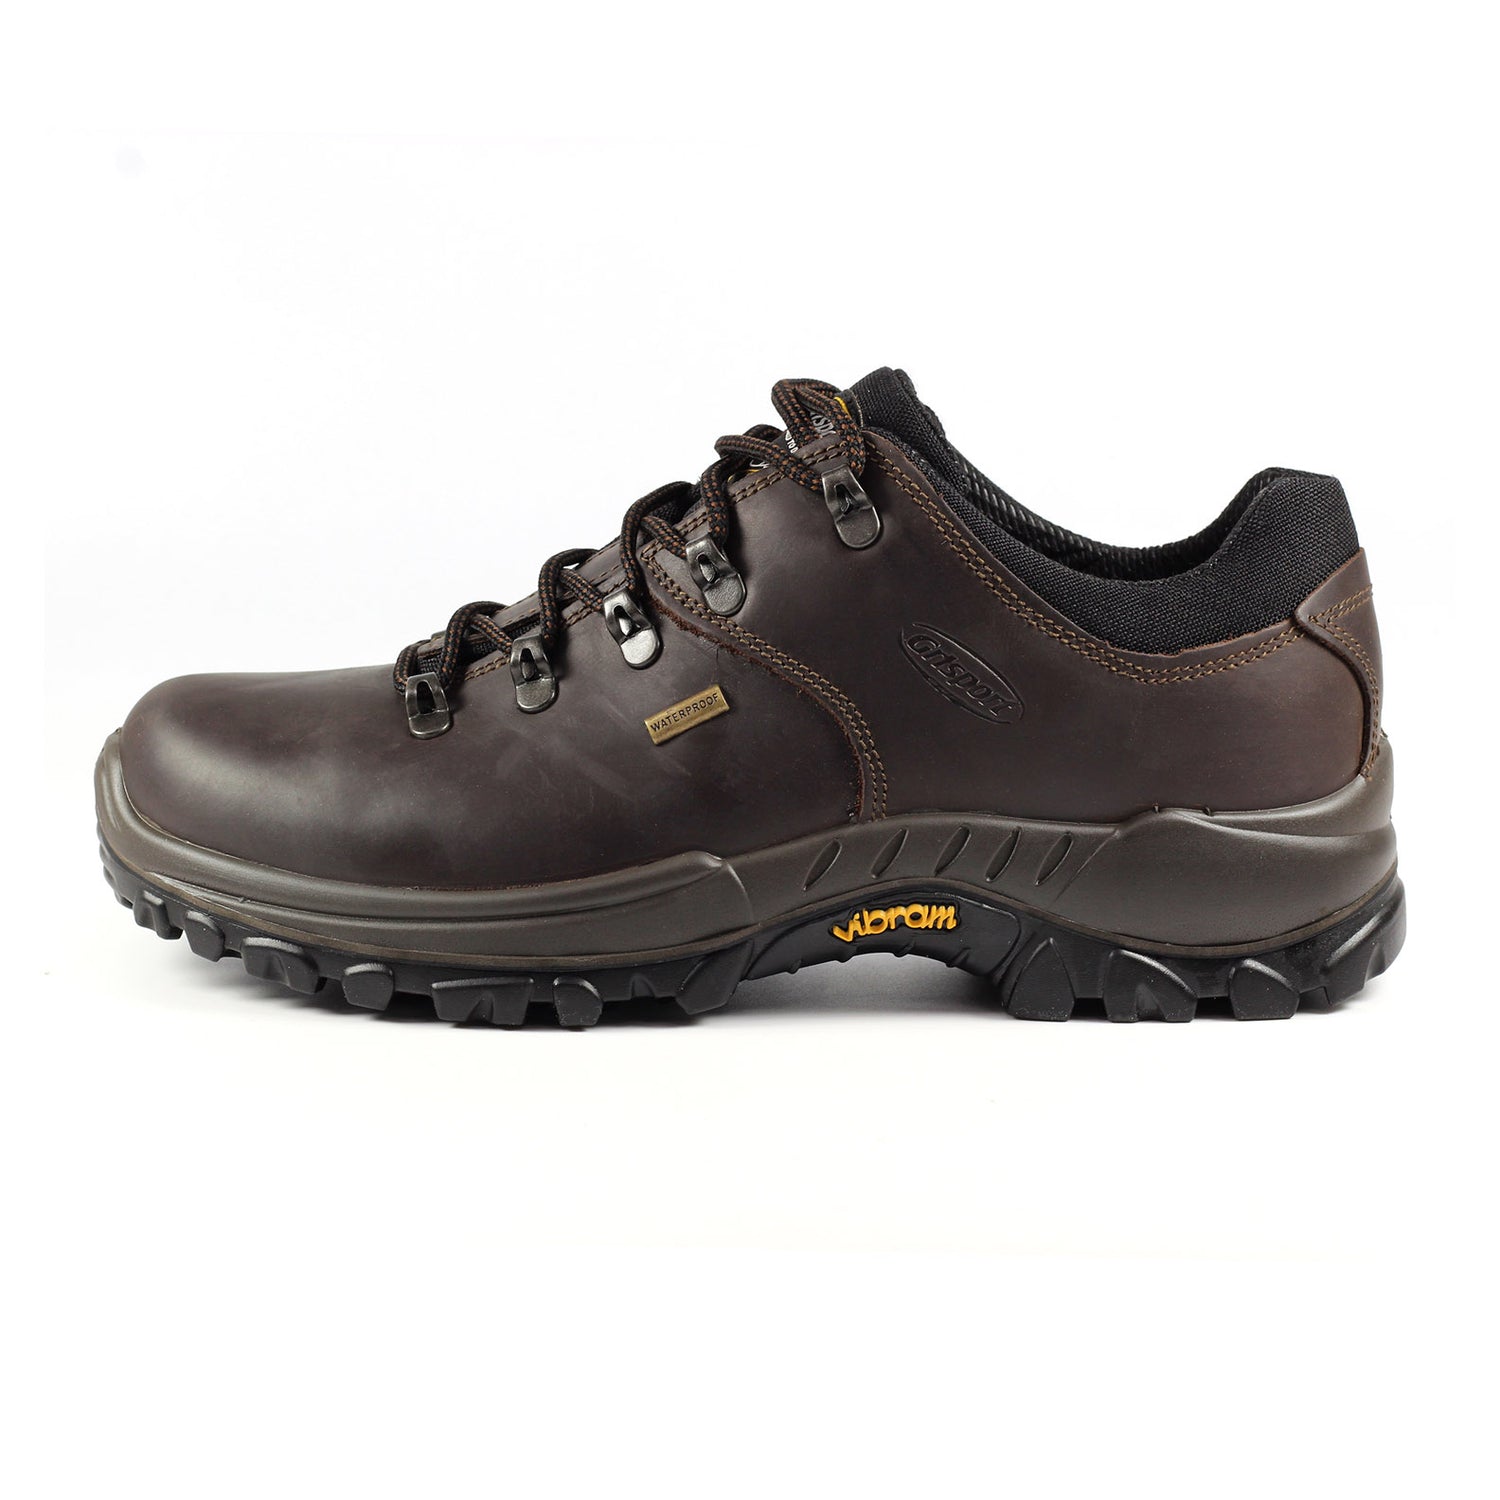 Grisport-Dartmoor-Walking-Shoes